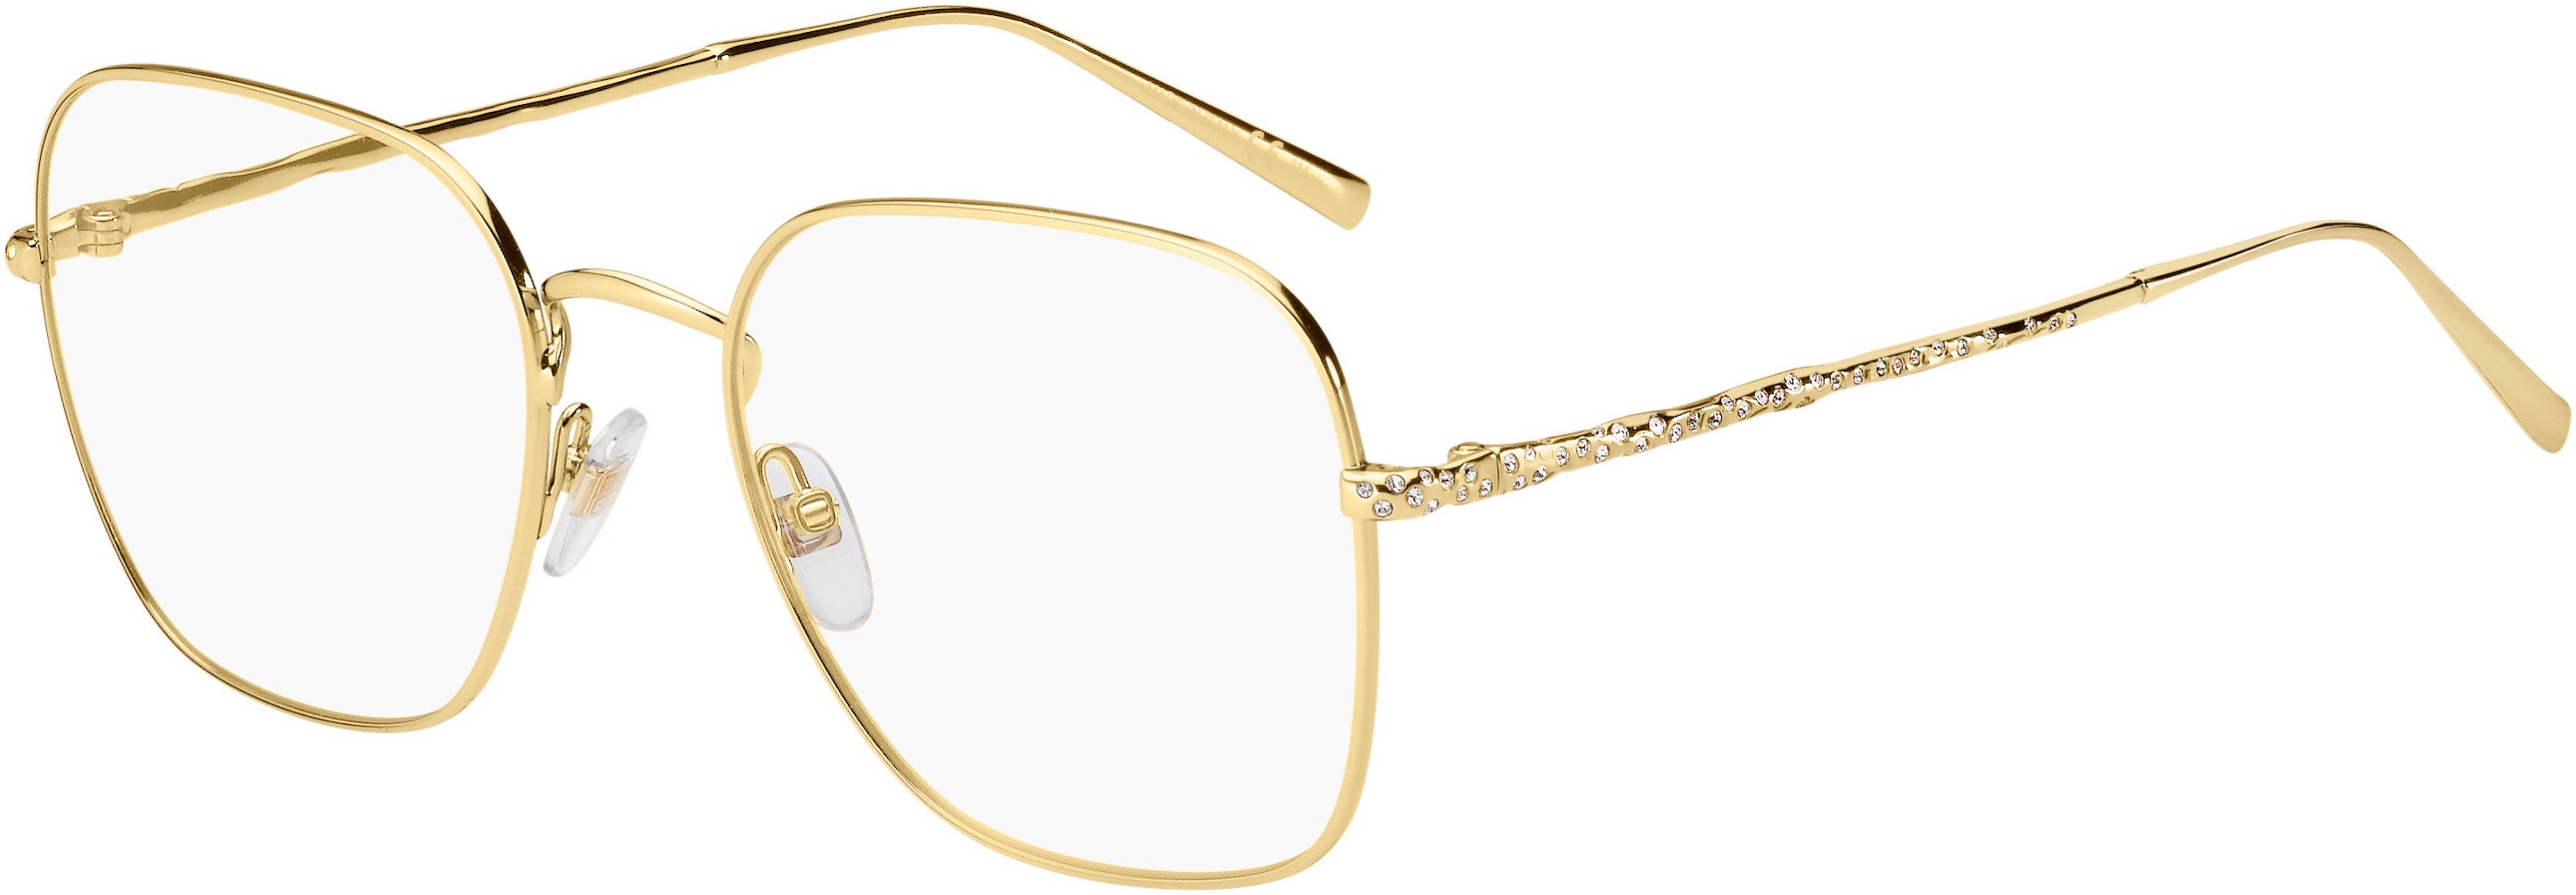  Givenchy 0128 Square Eyeglasses 0J5G-0J5G  Gold (00 Demo Lens)